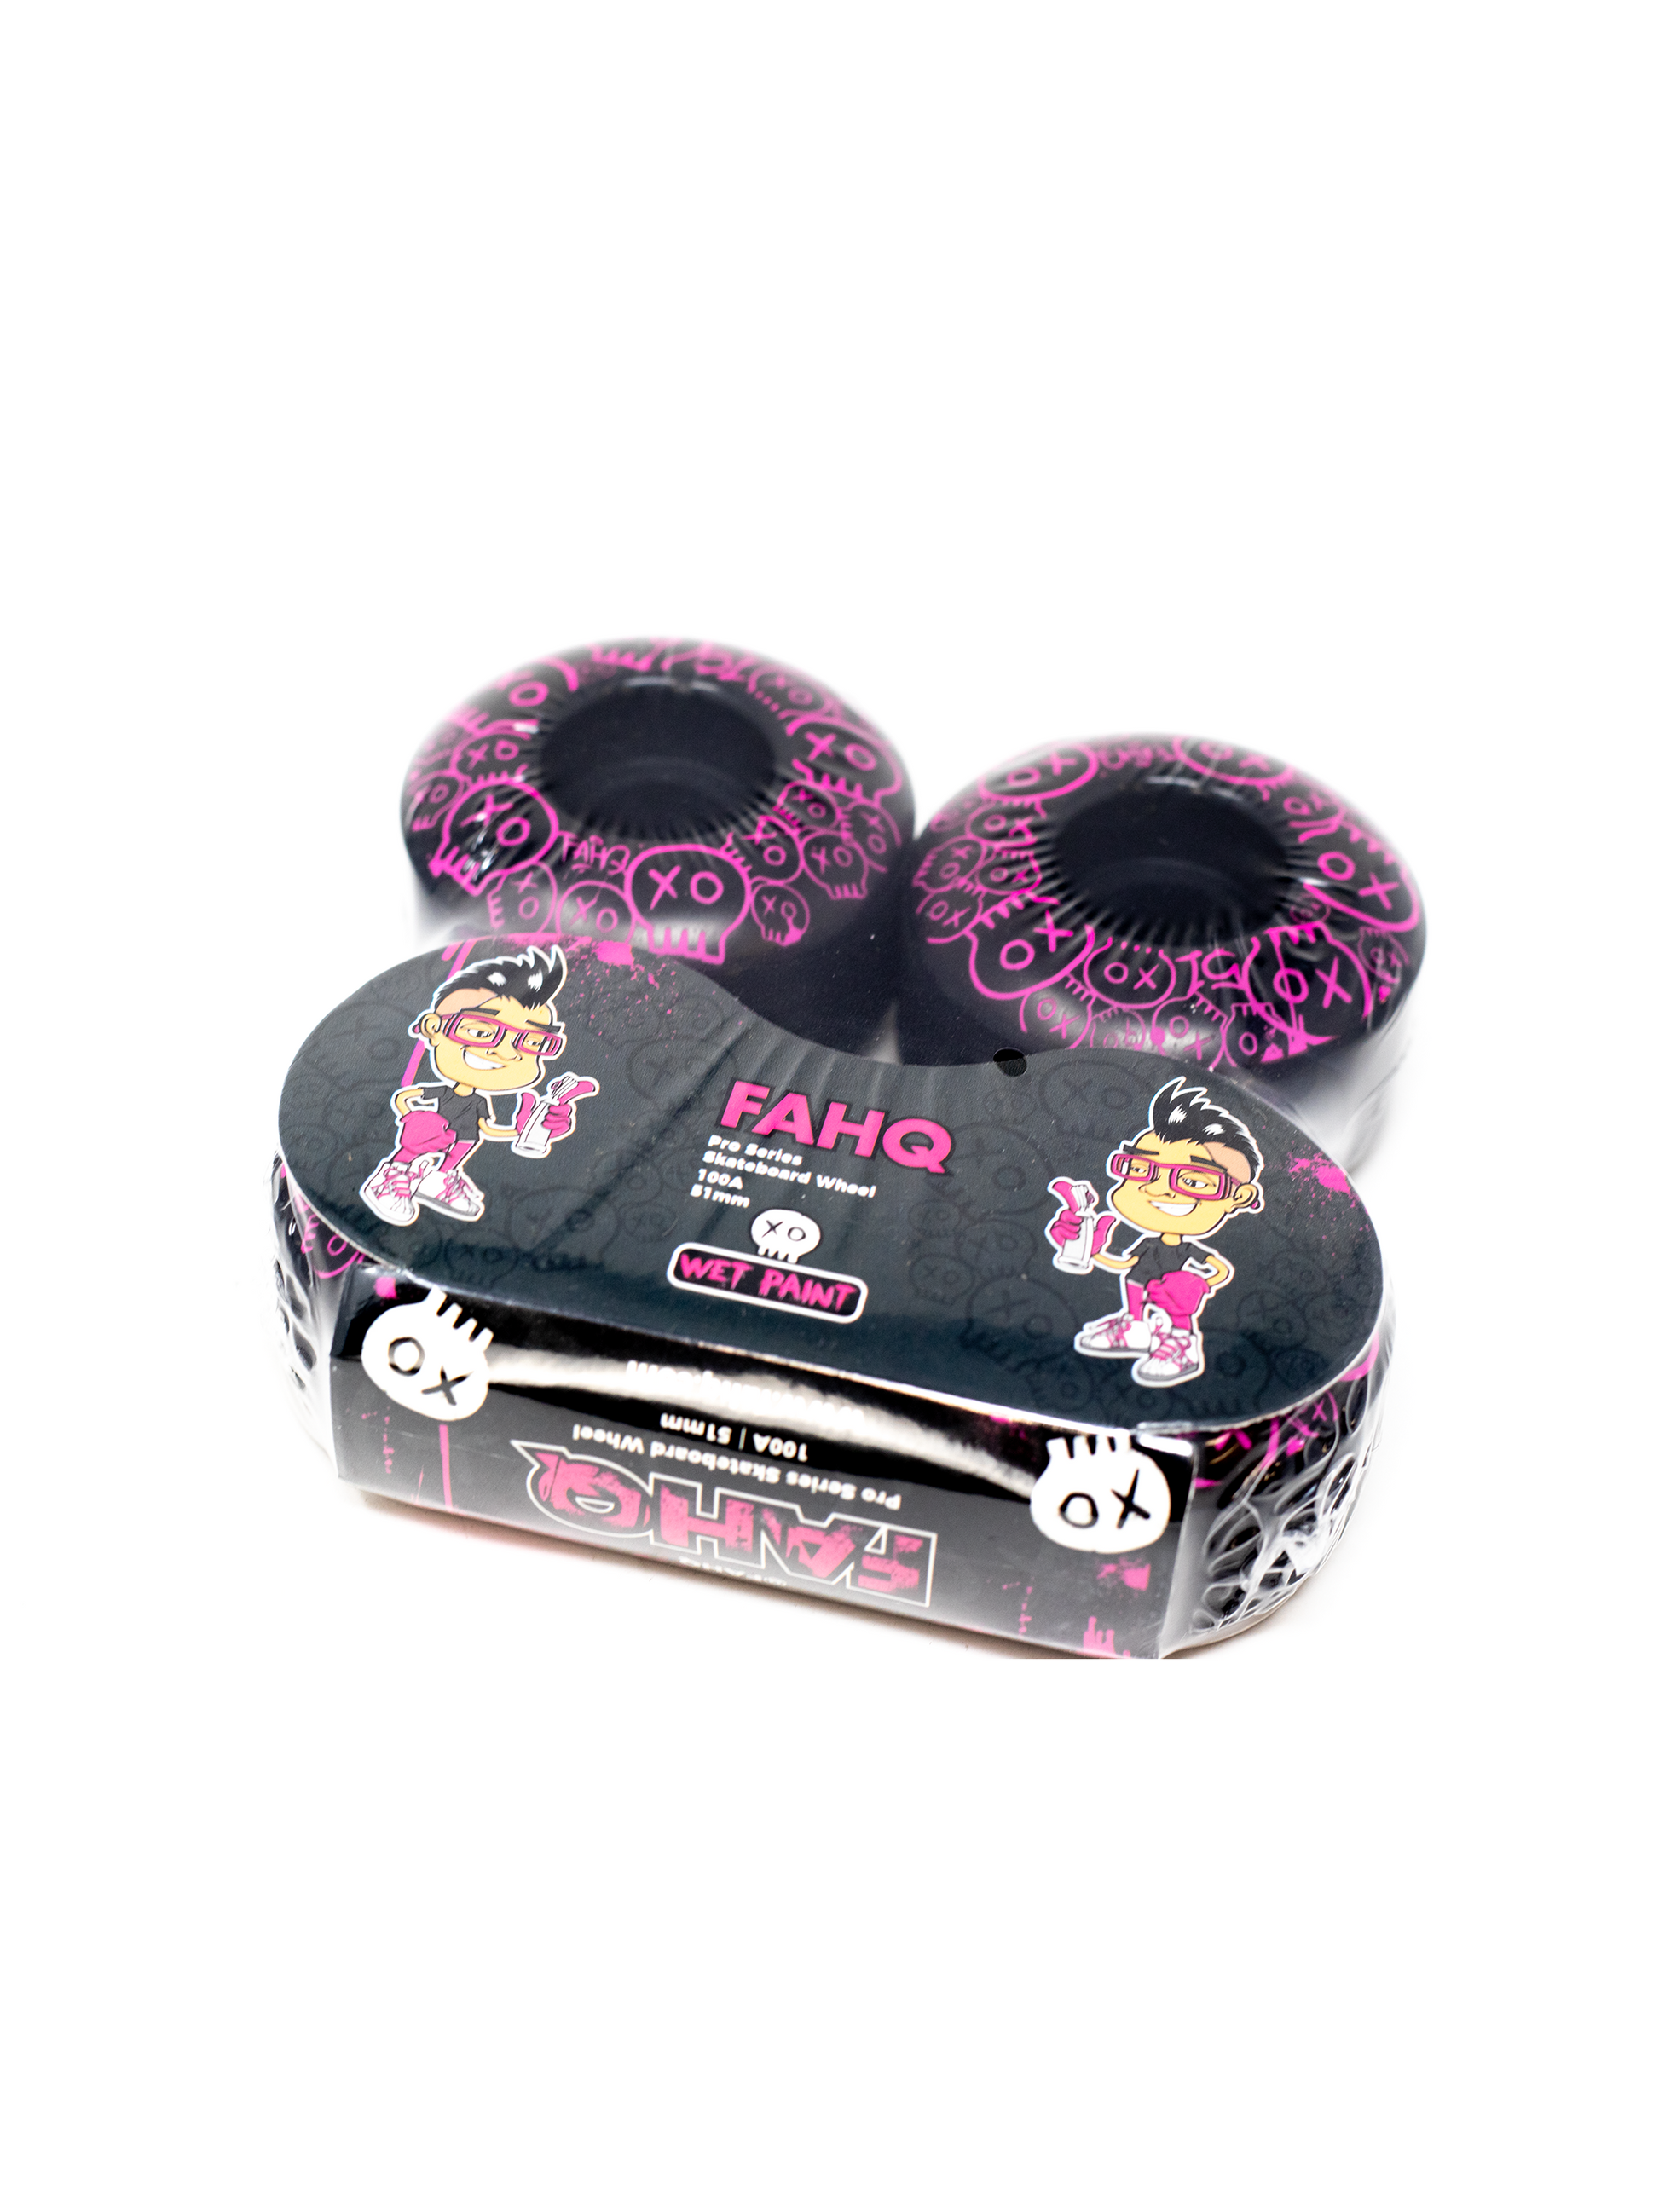 FAHQ Wet Paint Skateboard Wheels Packaging